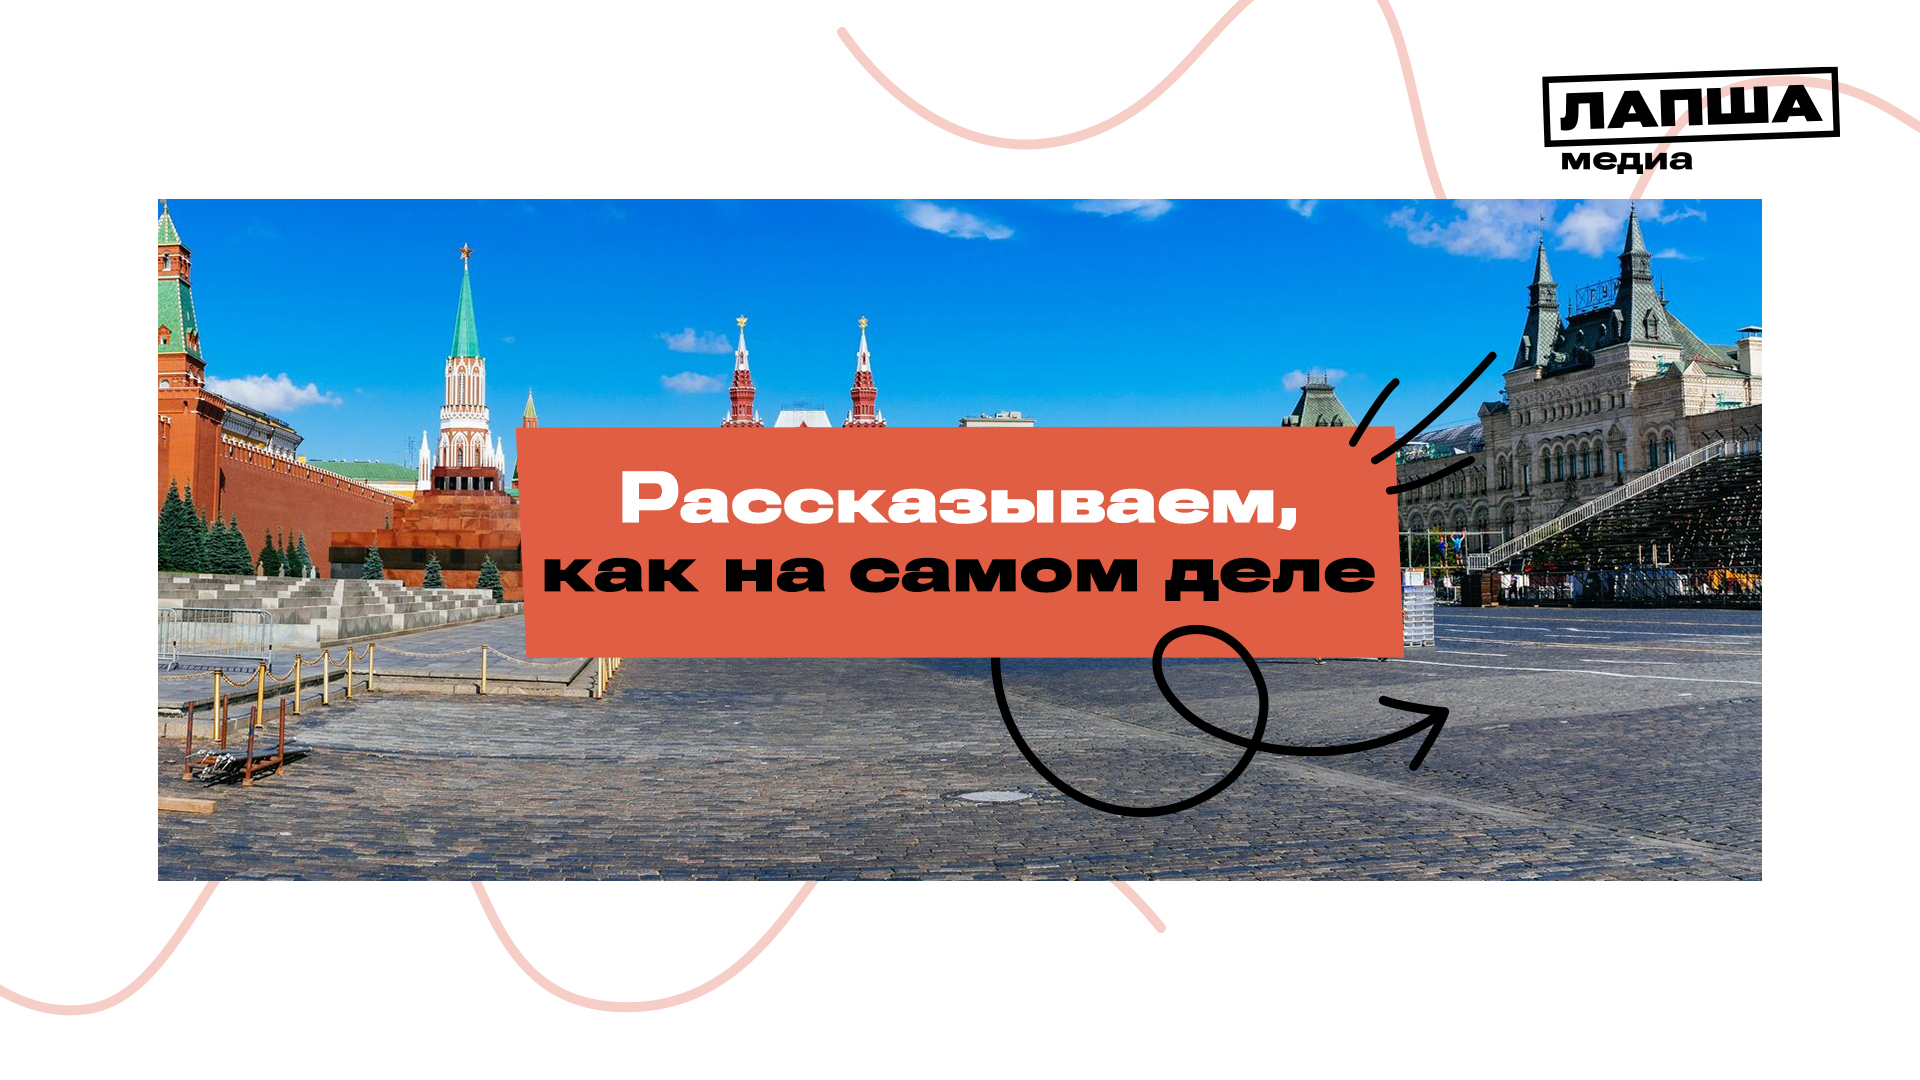 ФЕЙК: В центре Москвы летал украинский дрон